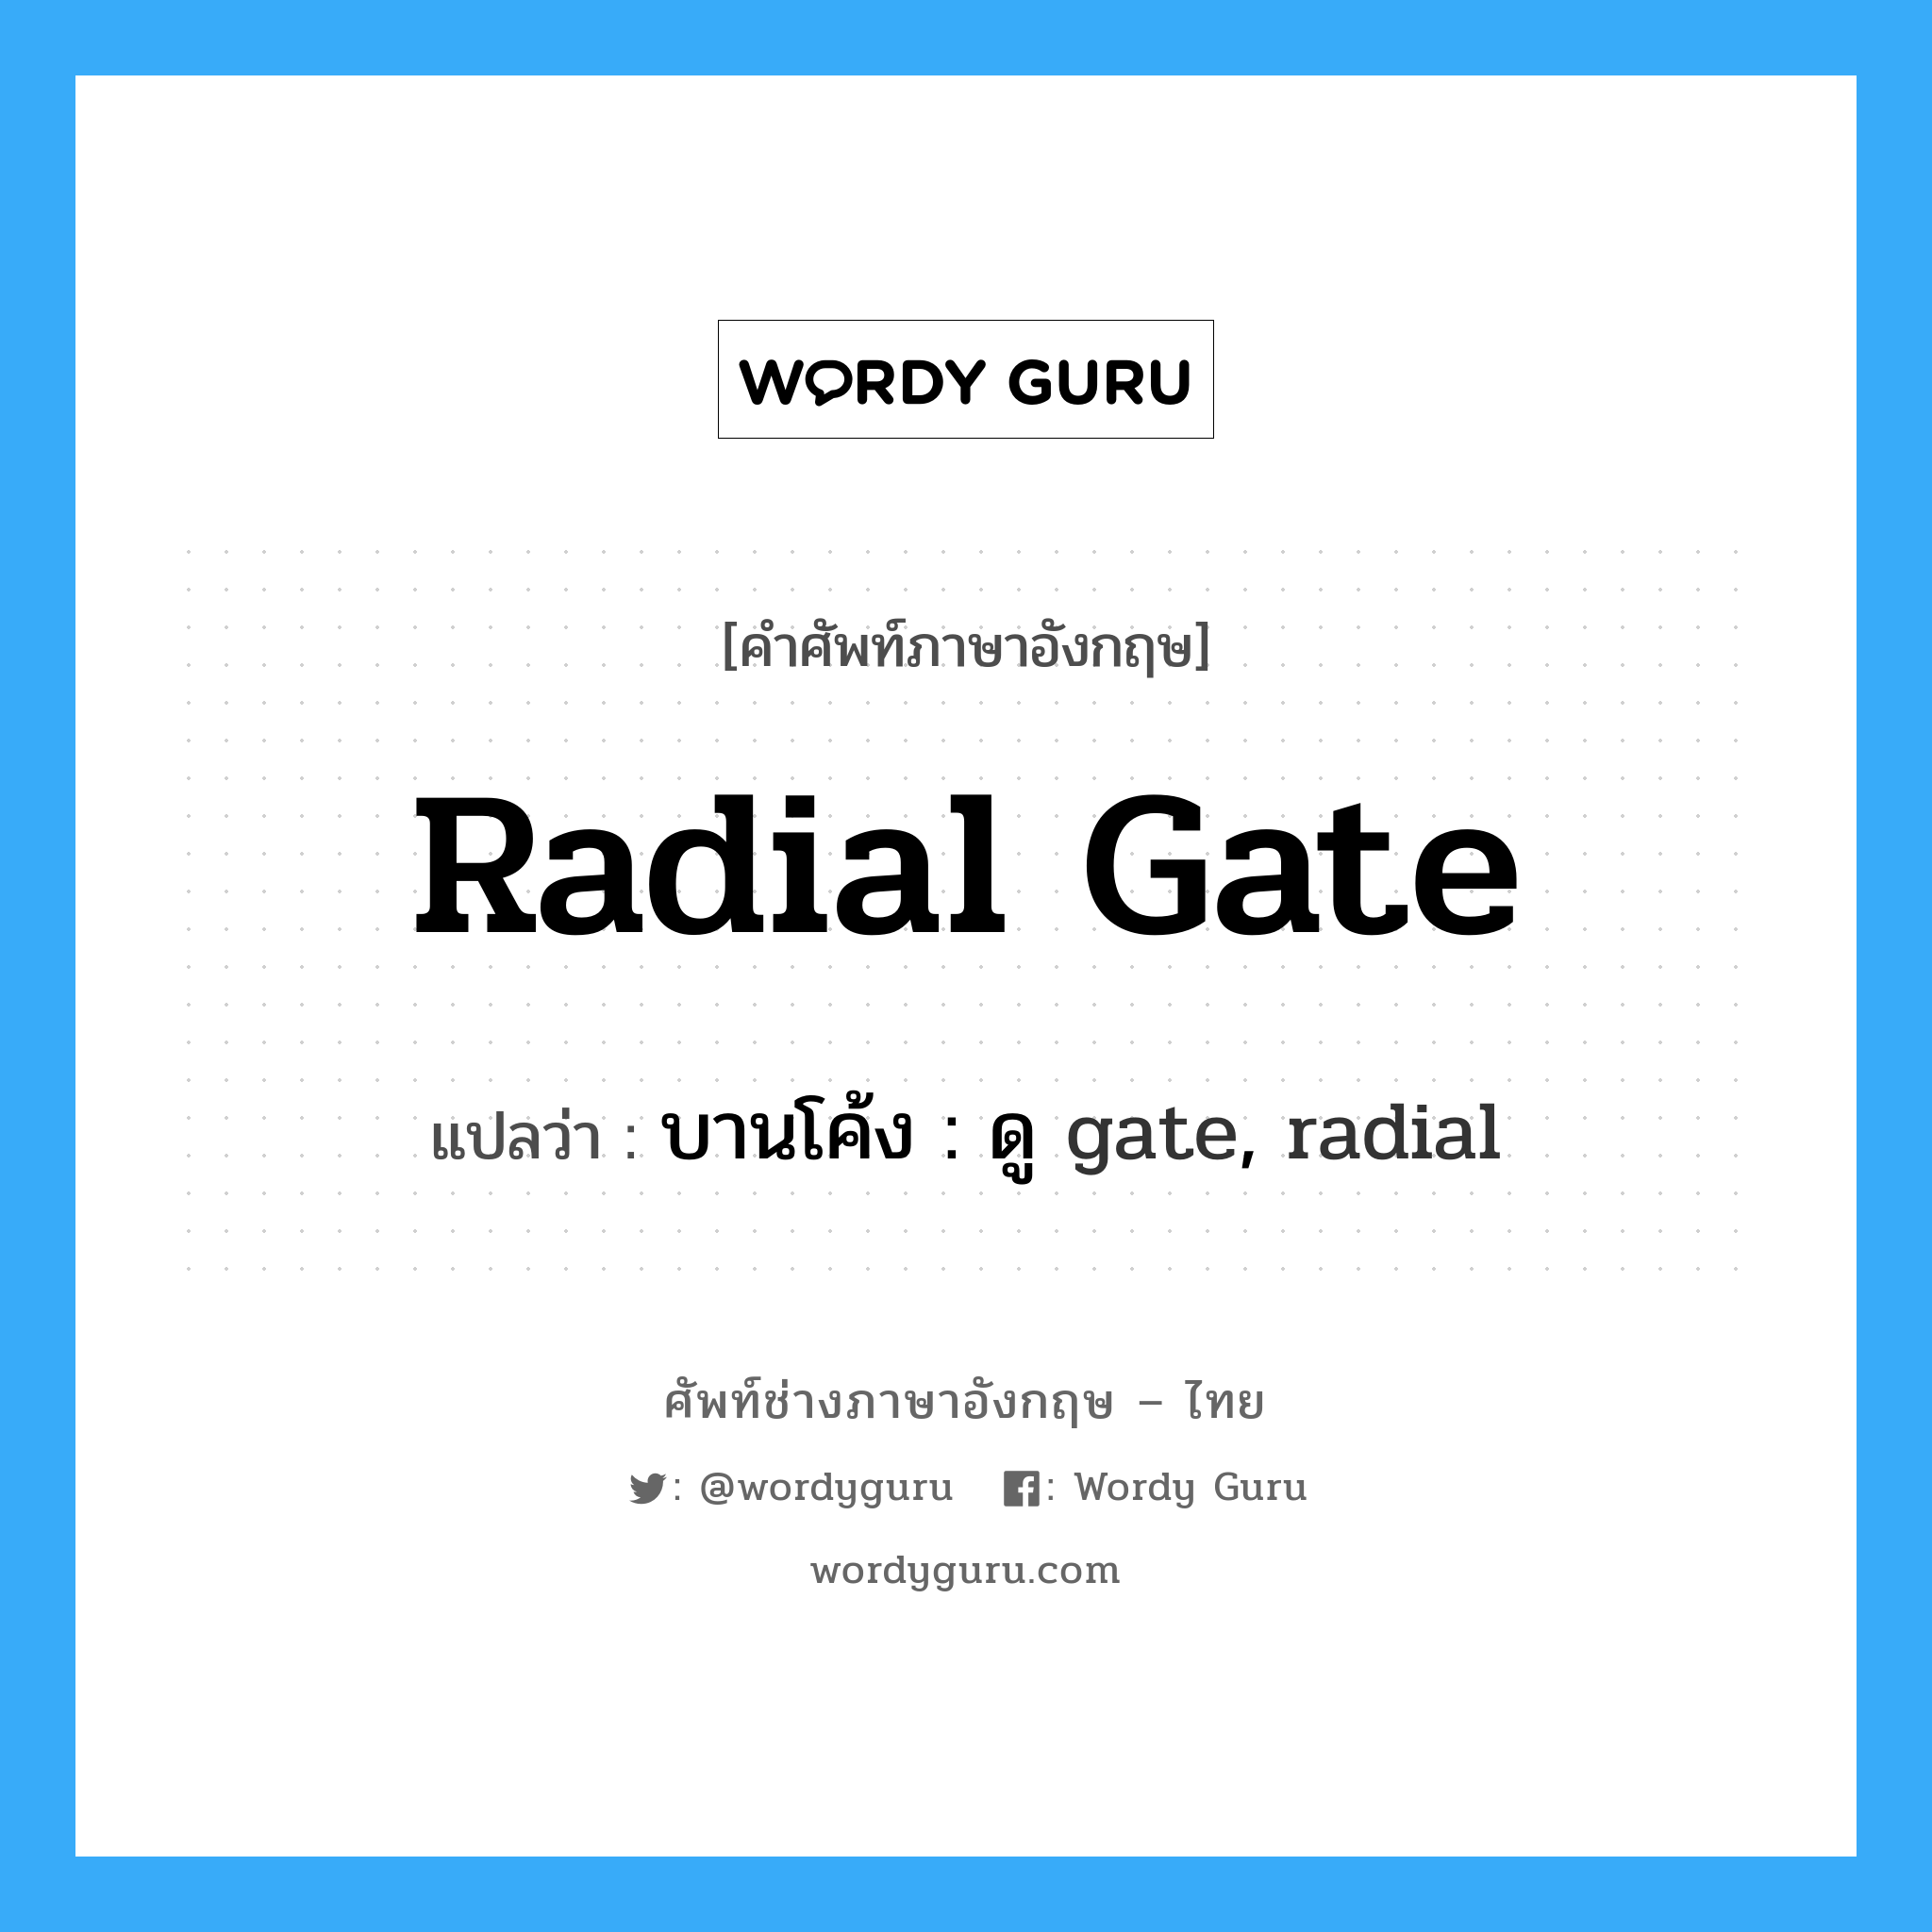 บานโค้ง : ดู gate, radial ภาษาอังกฤษ?, คำศัพท์ช่างภาษาอังกฤษ - ไทย บานโค้ง : ดู gate, radial คำศัพท์ภาษาอังกฤษ บานโค้ง : ดู gate, radial แปลว่า radial gate